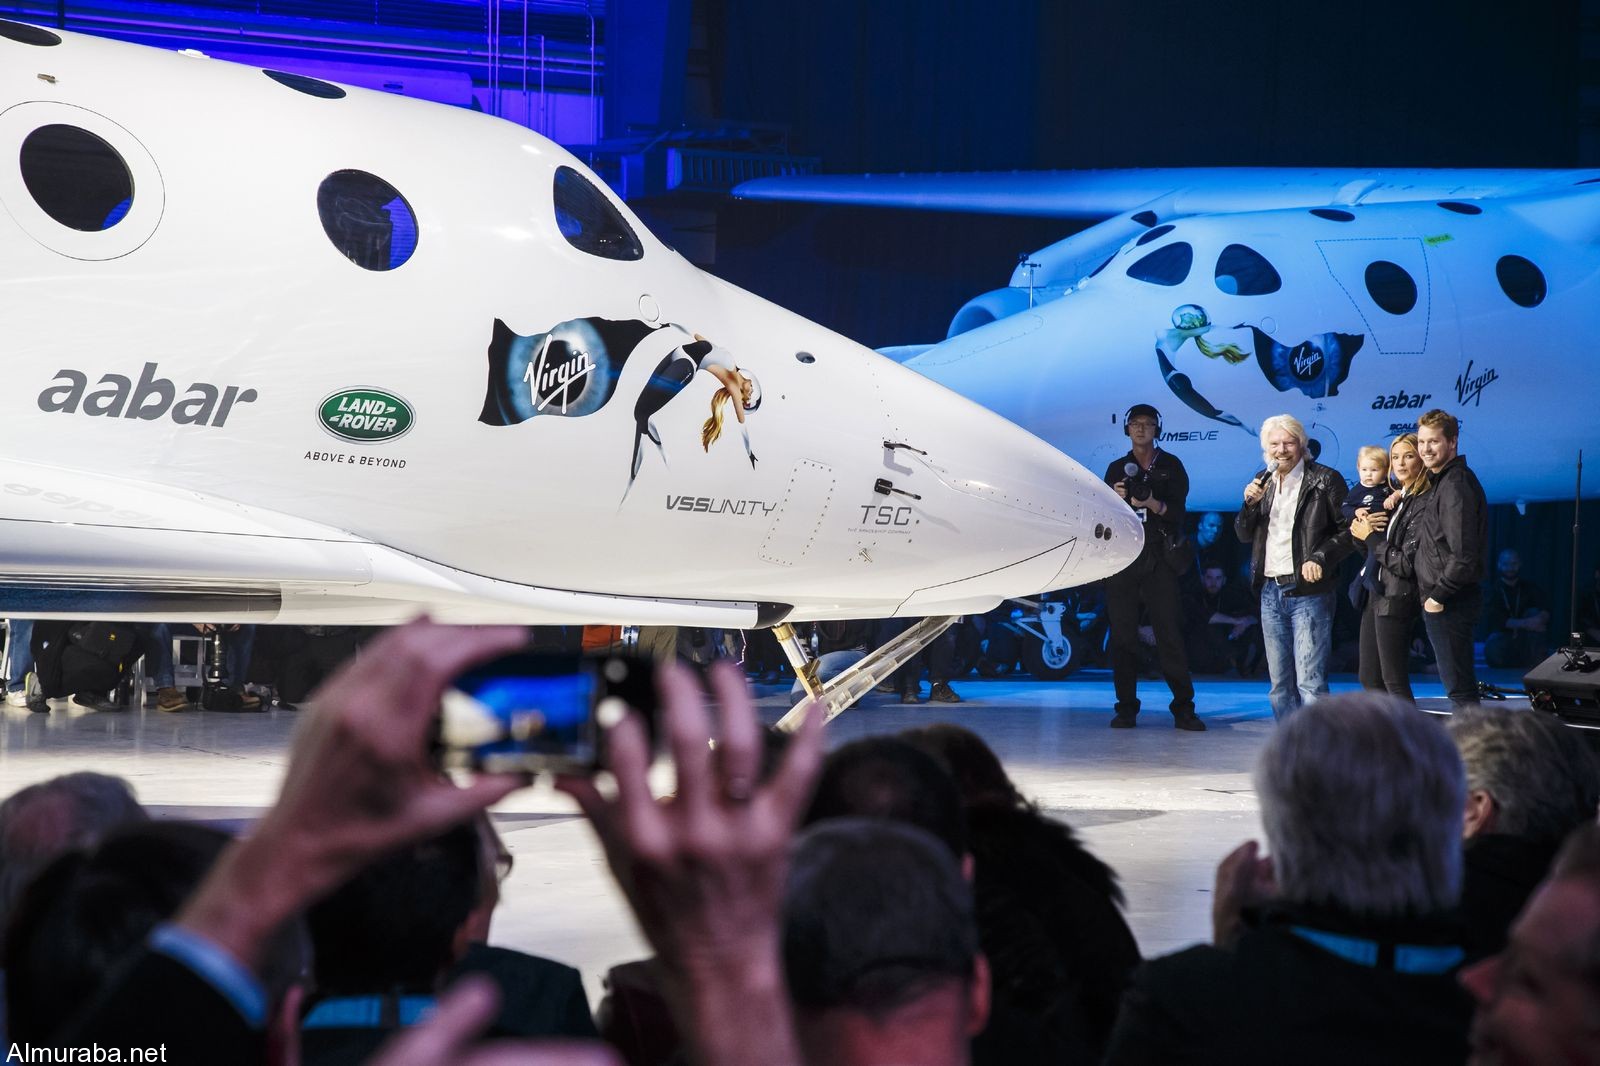 "رنج روفر" اوتوبيوغرافي تشارك في حفل إطلاق طائرة الفضاء الجديدة Range Rover 2016 19